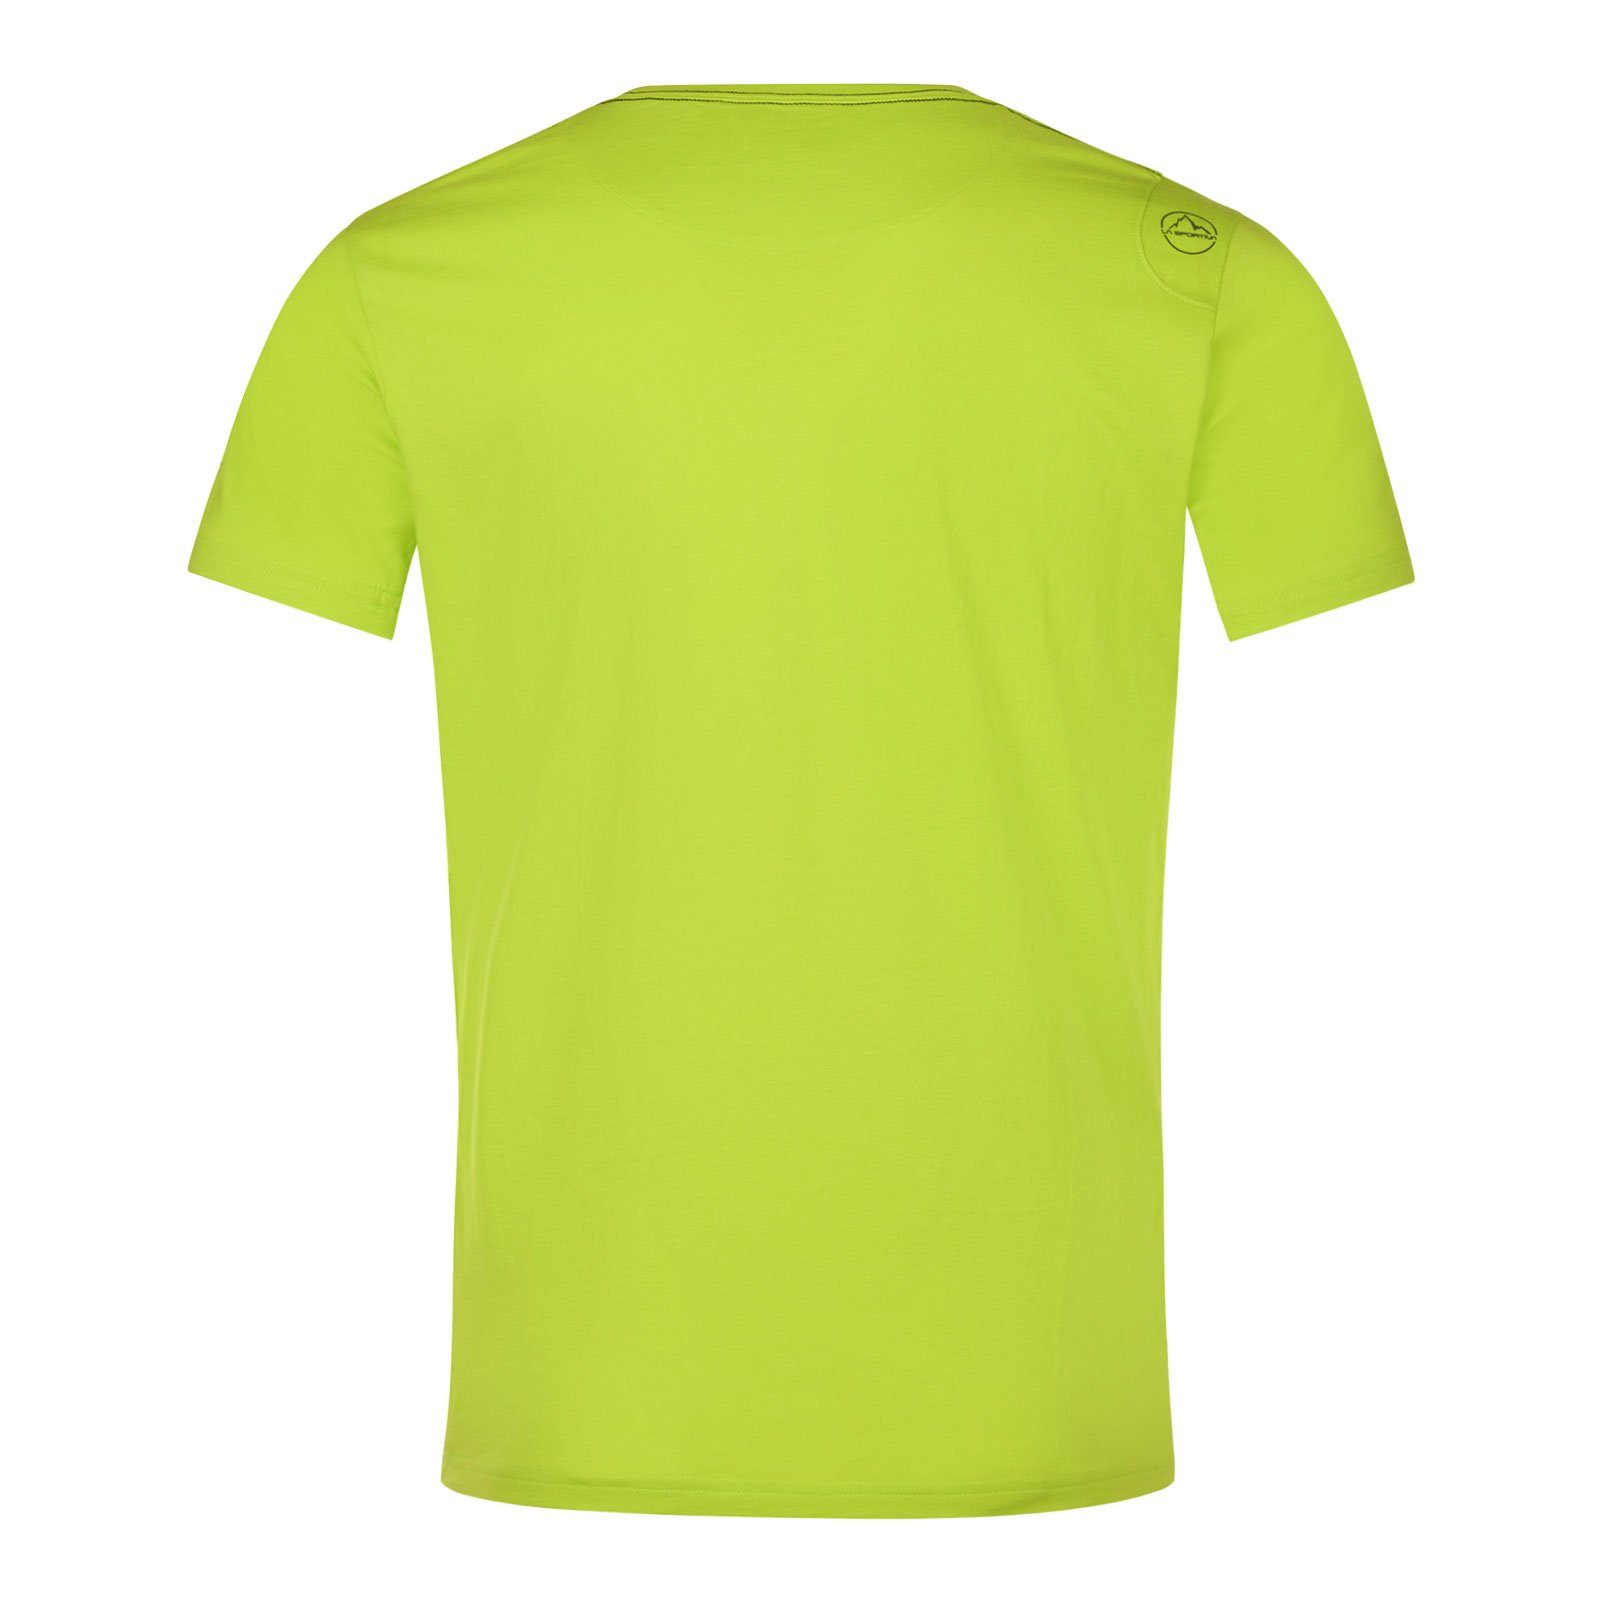 Sportiva 729729 lime aus 100% Van M La T-Shirt organischer Baumwolle punch